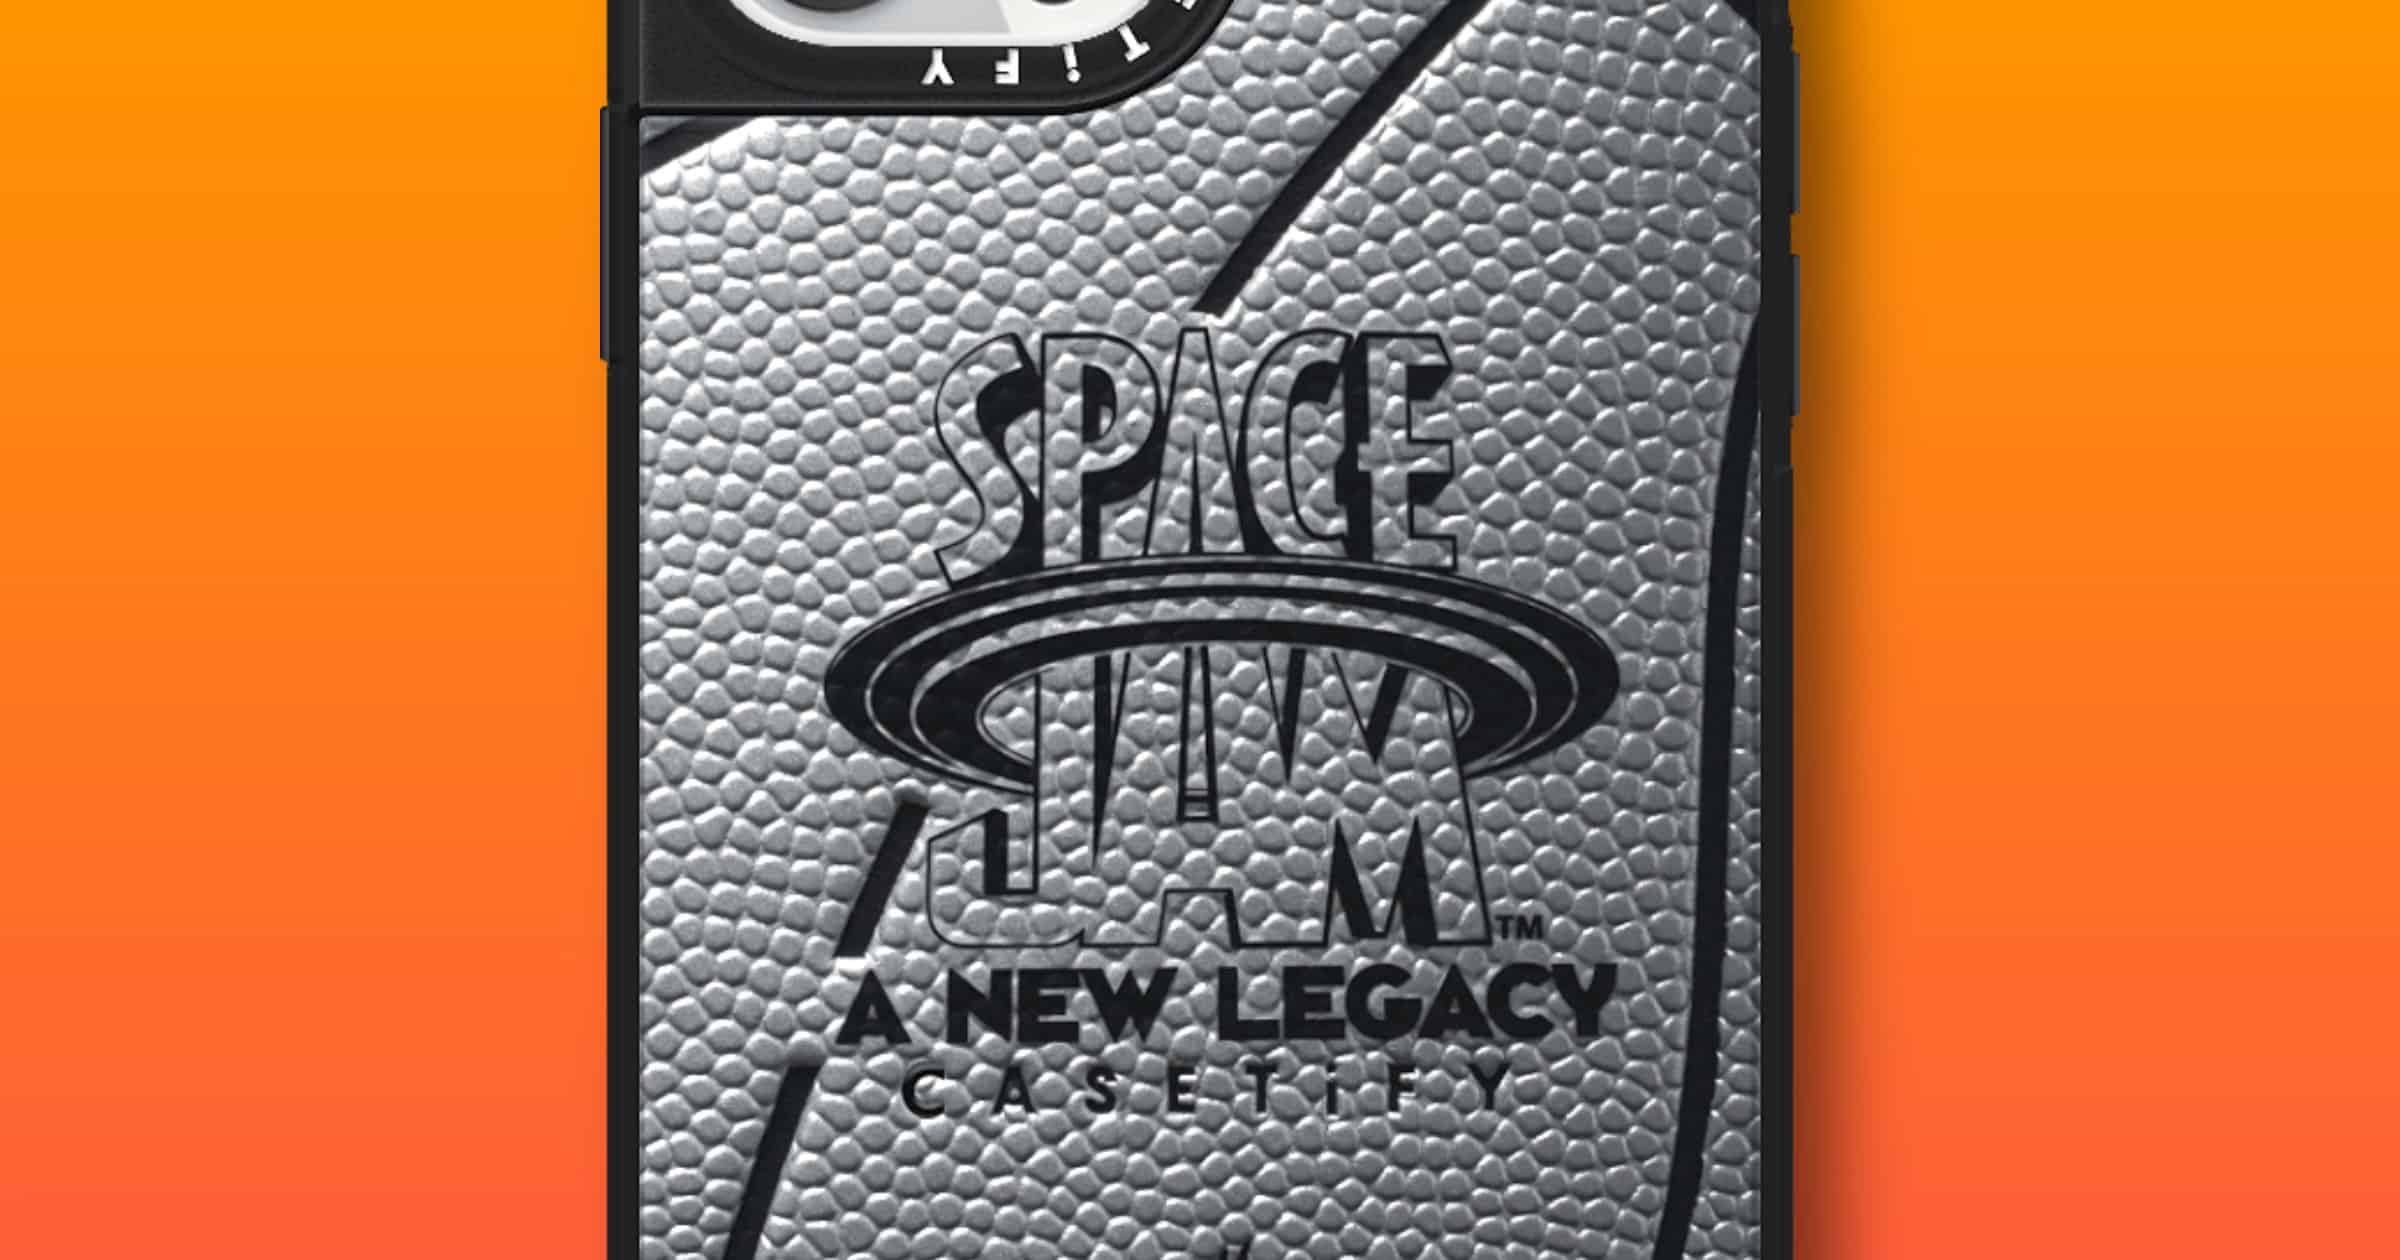 Space jam iPhone case